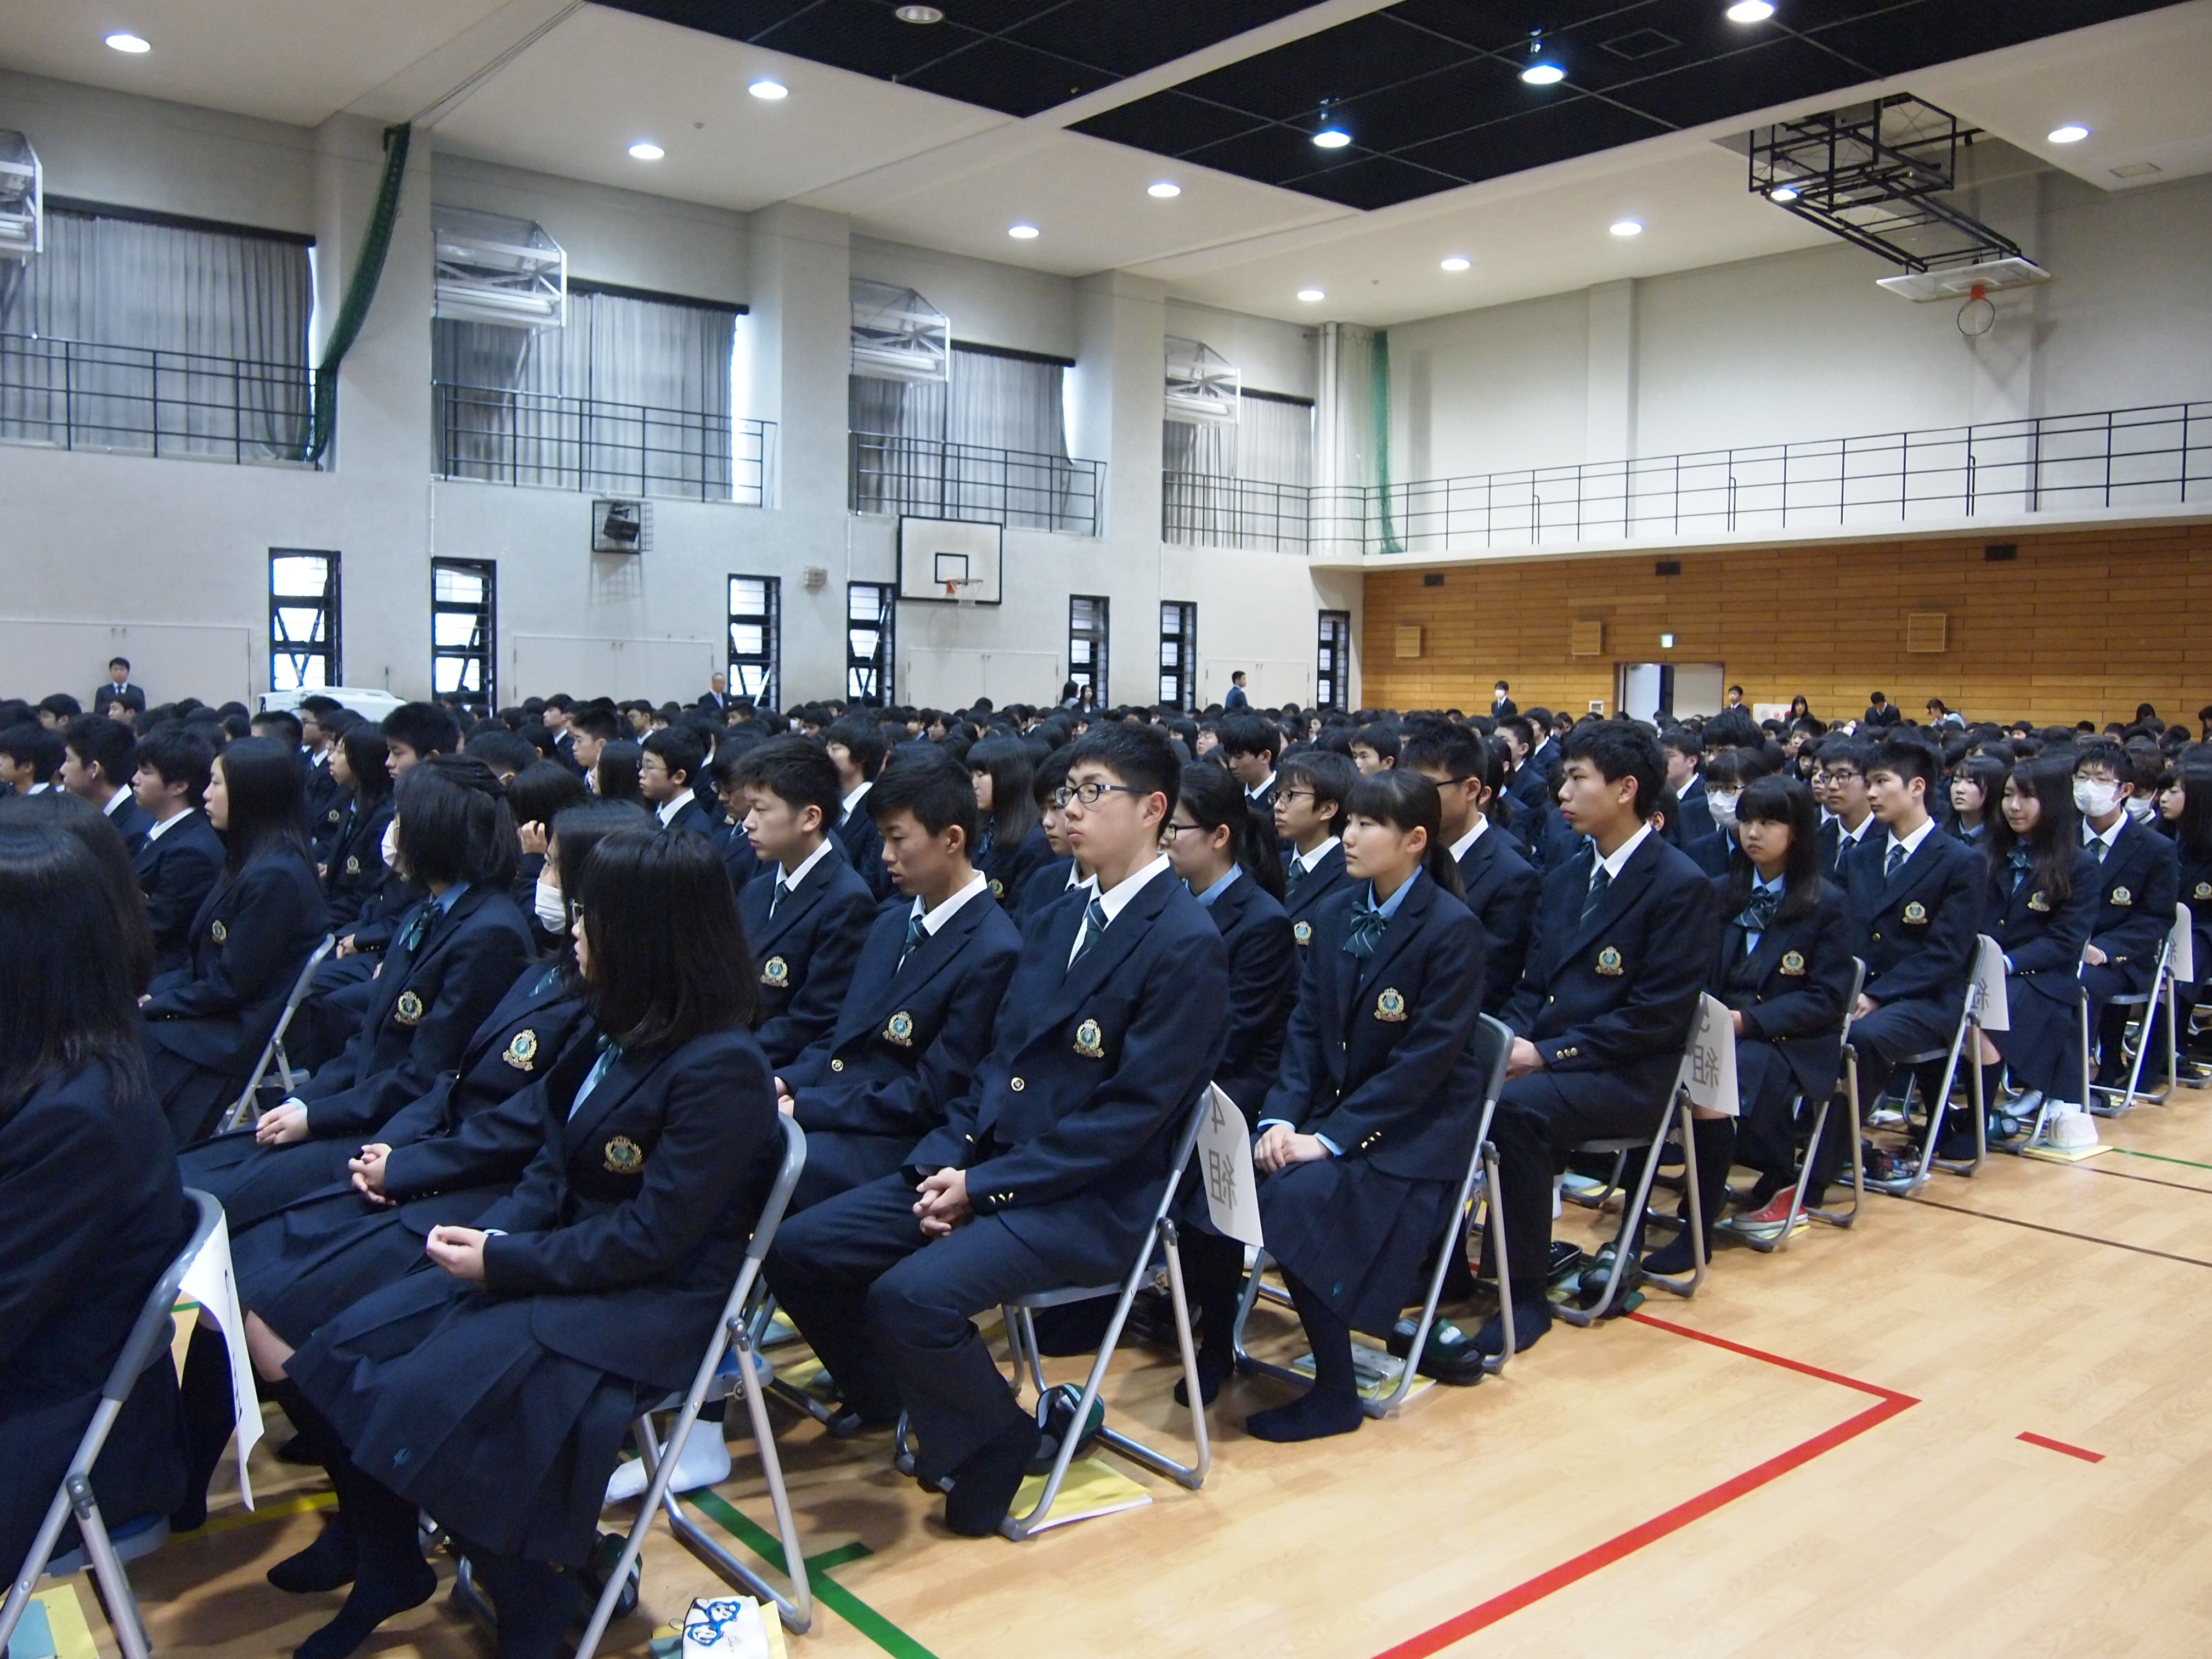 新入生オリエンテーション 大阪学芸高等学校 Osaka Gakugei Senior High School